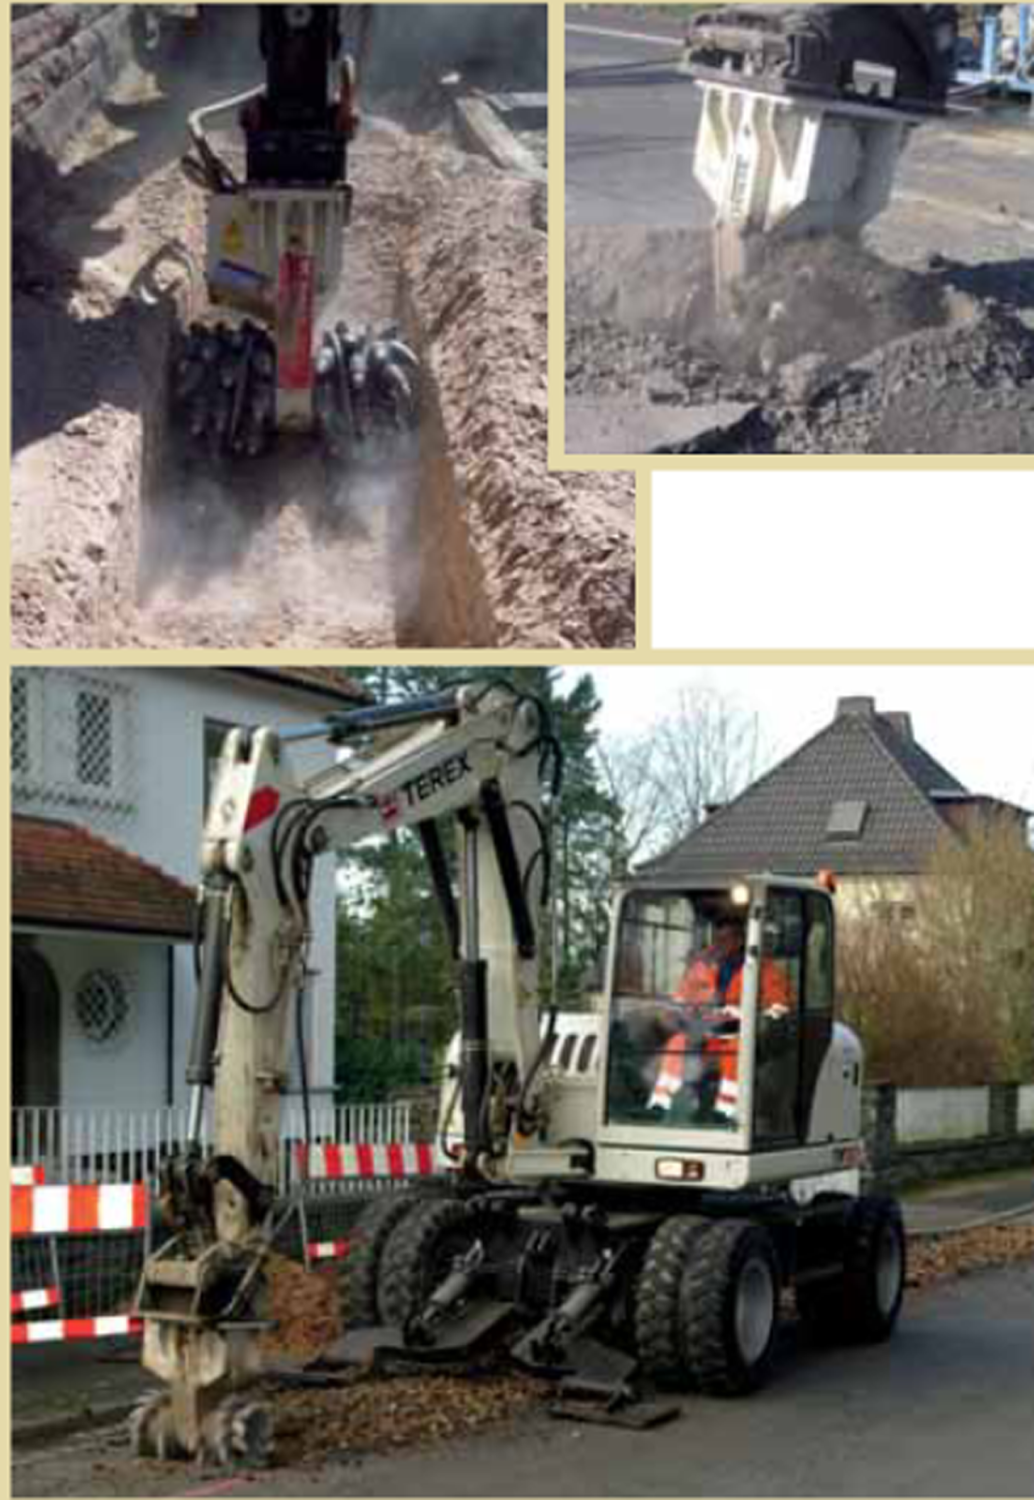 terex-ws-120md-160-hyd-hp-dual-drum-grinder-30-50-ton-excavator-big-9